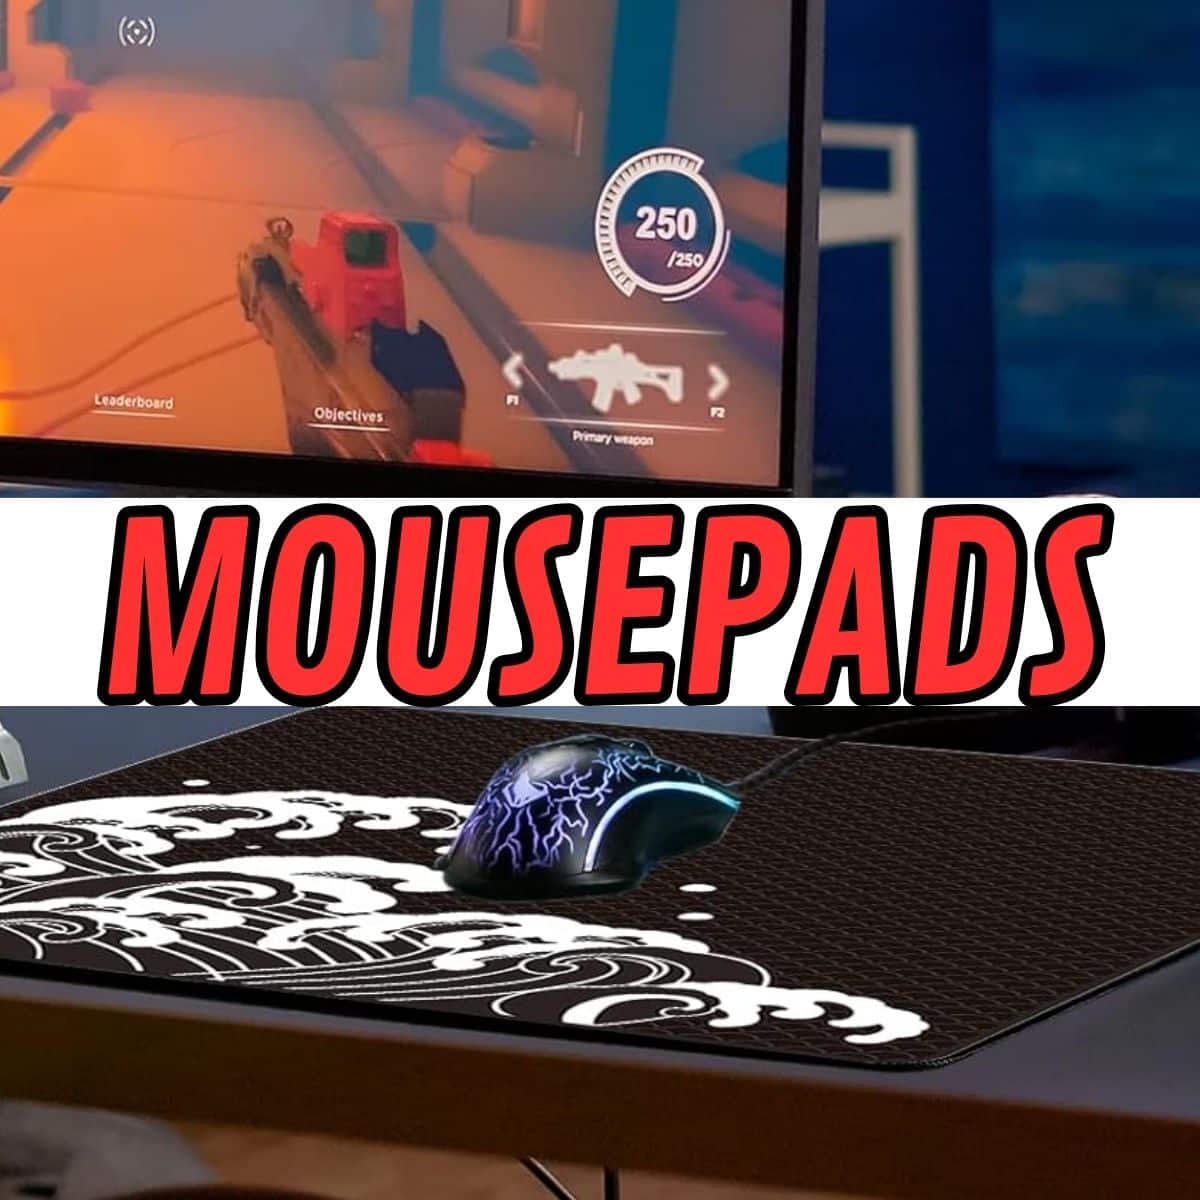 Melhores mousepads